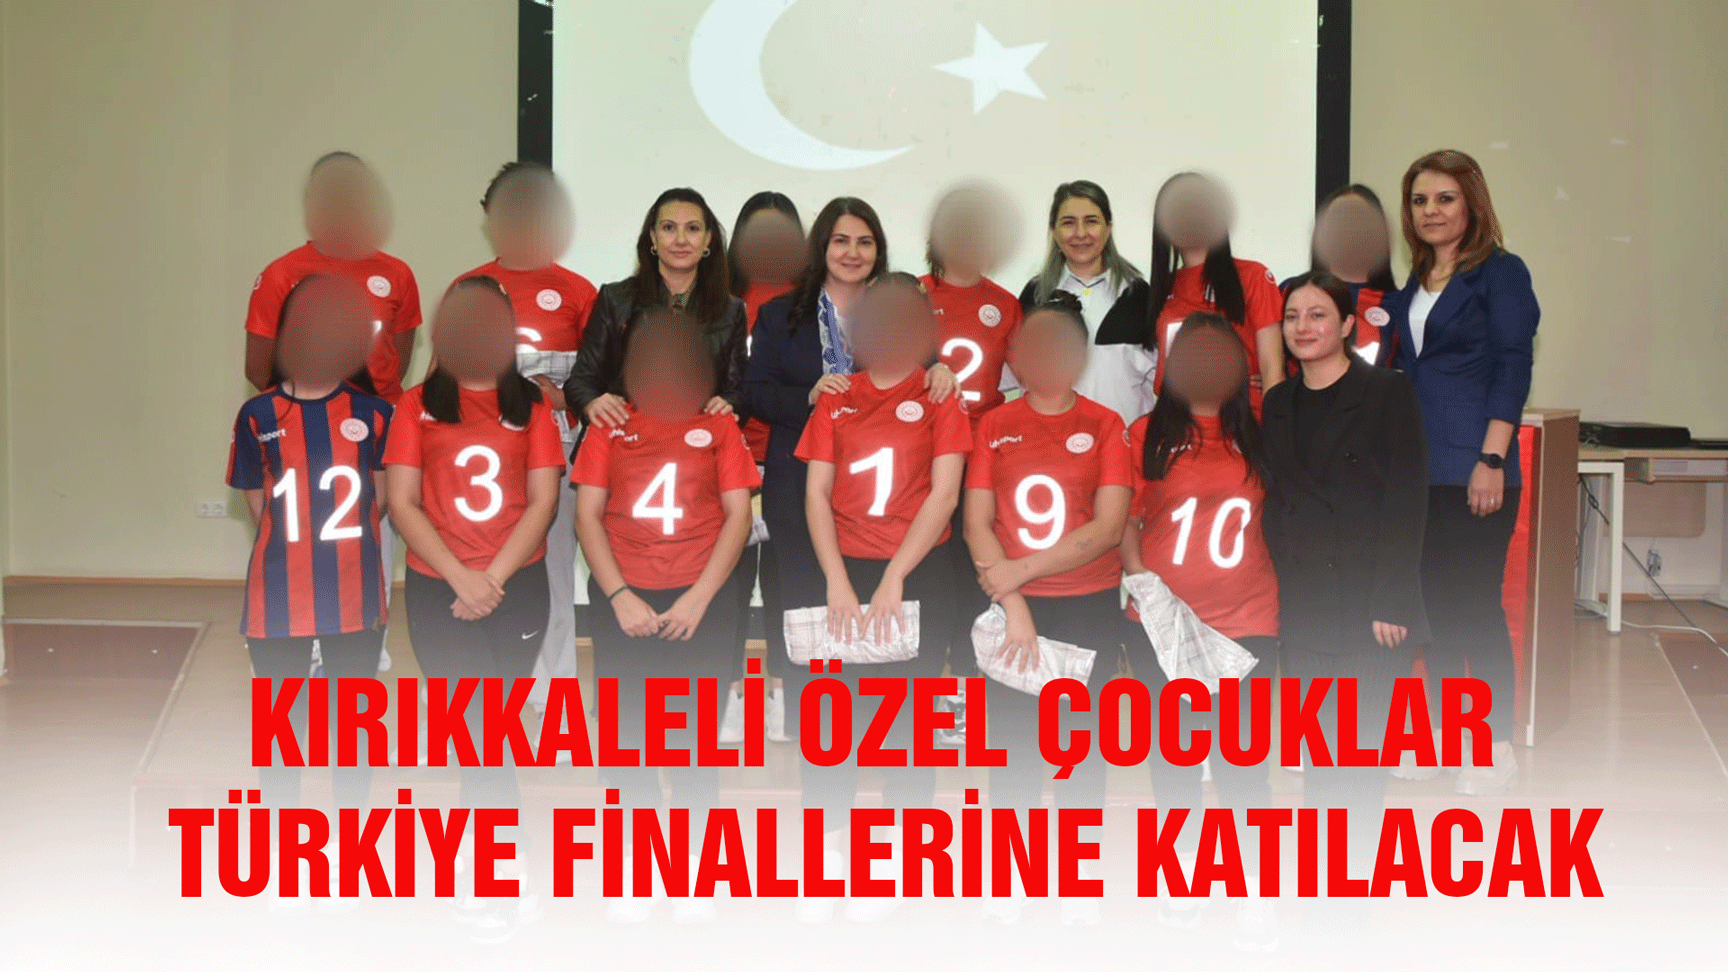 Kırıkkaleli özel çocuklar Türkiye Finallerine katılacak